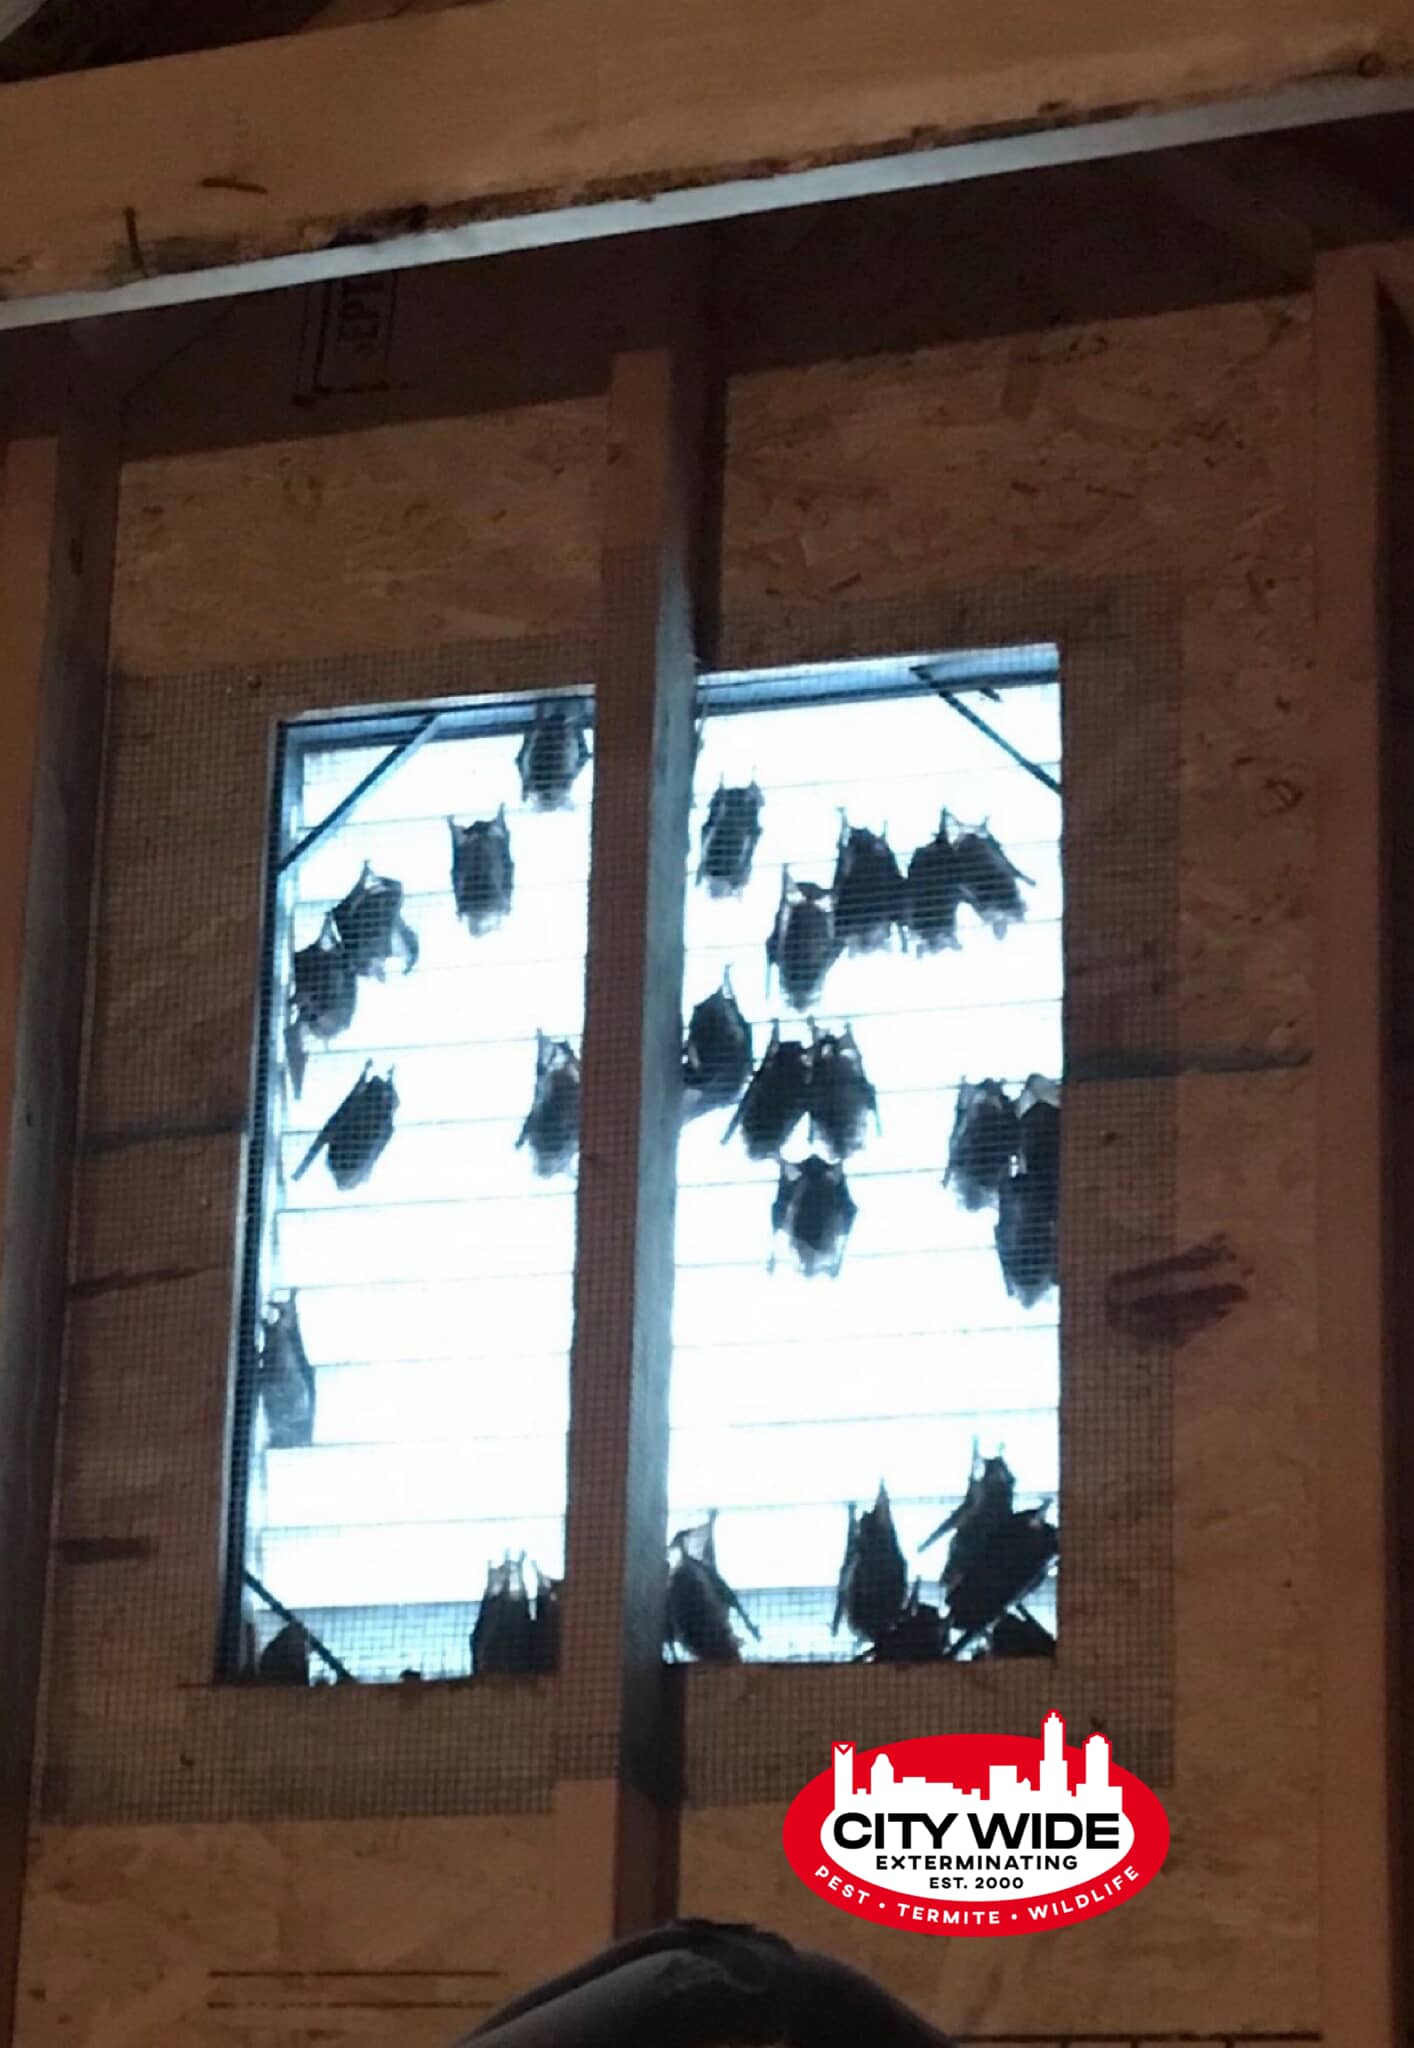 Bats in an Attic